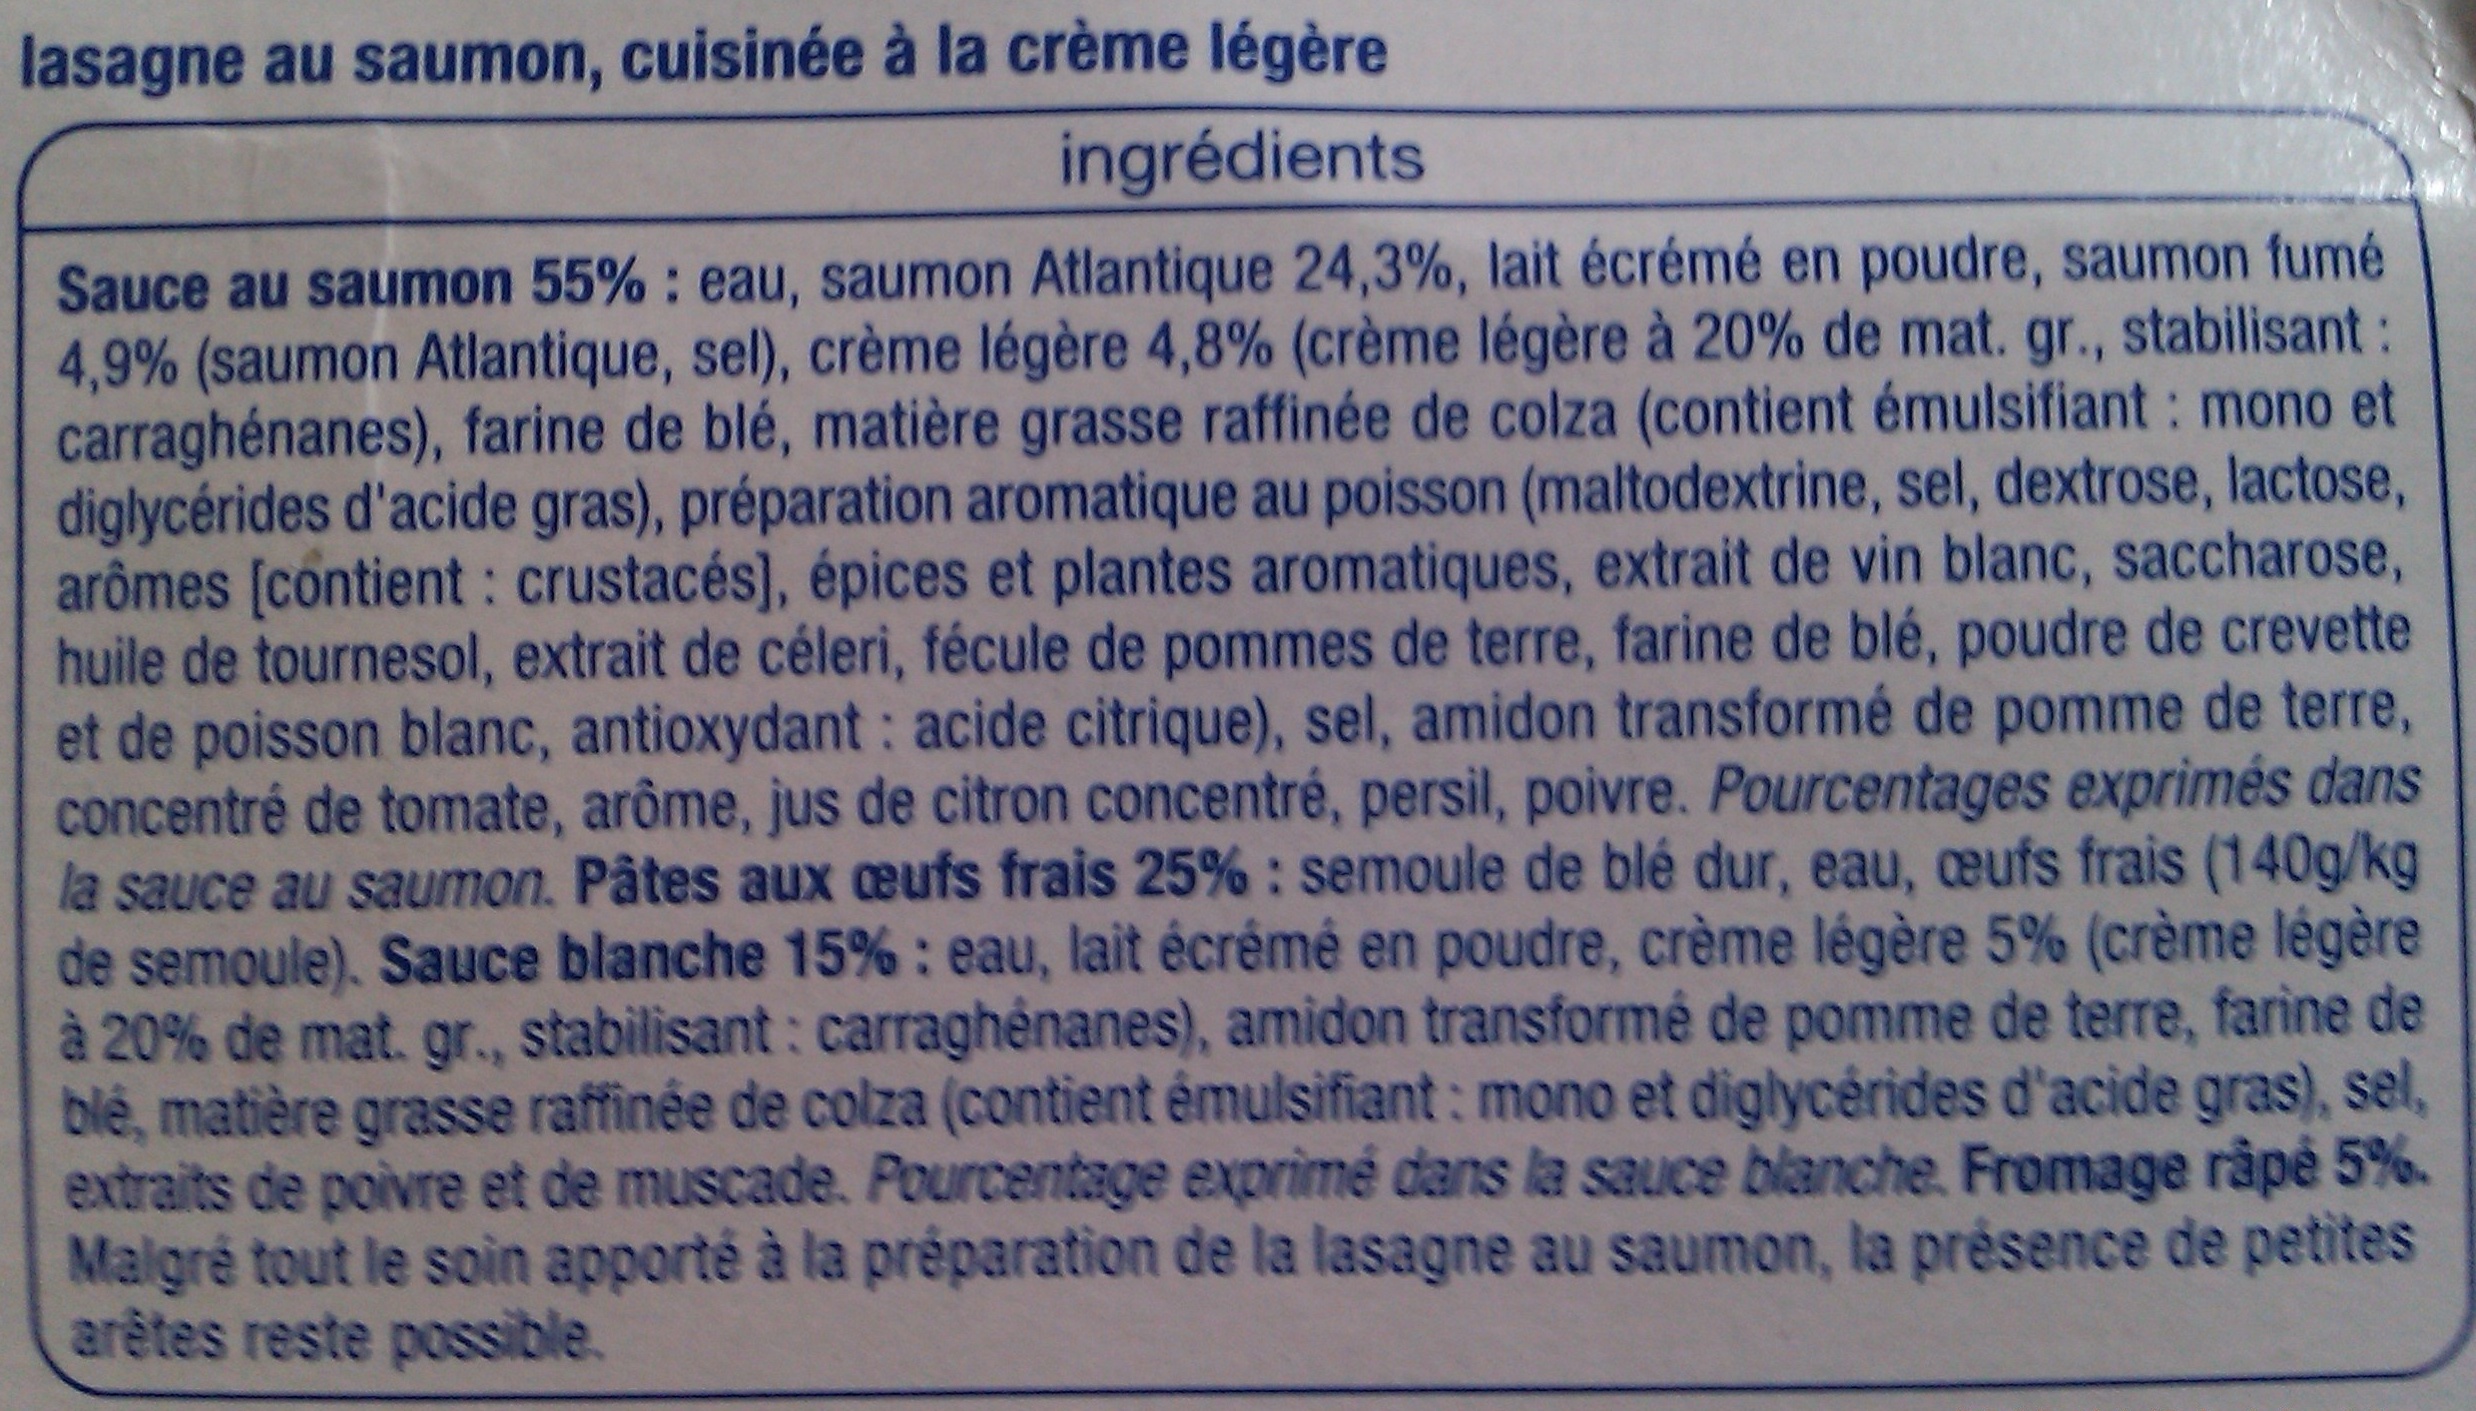 Lasagne Saumon - Ingredients - fr